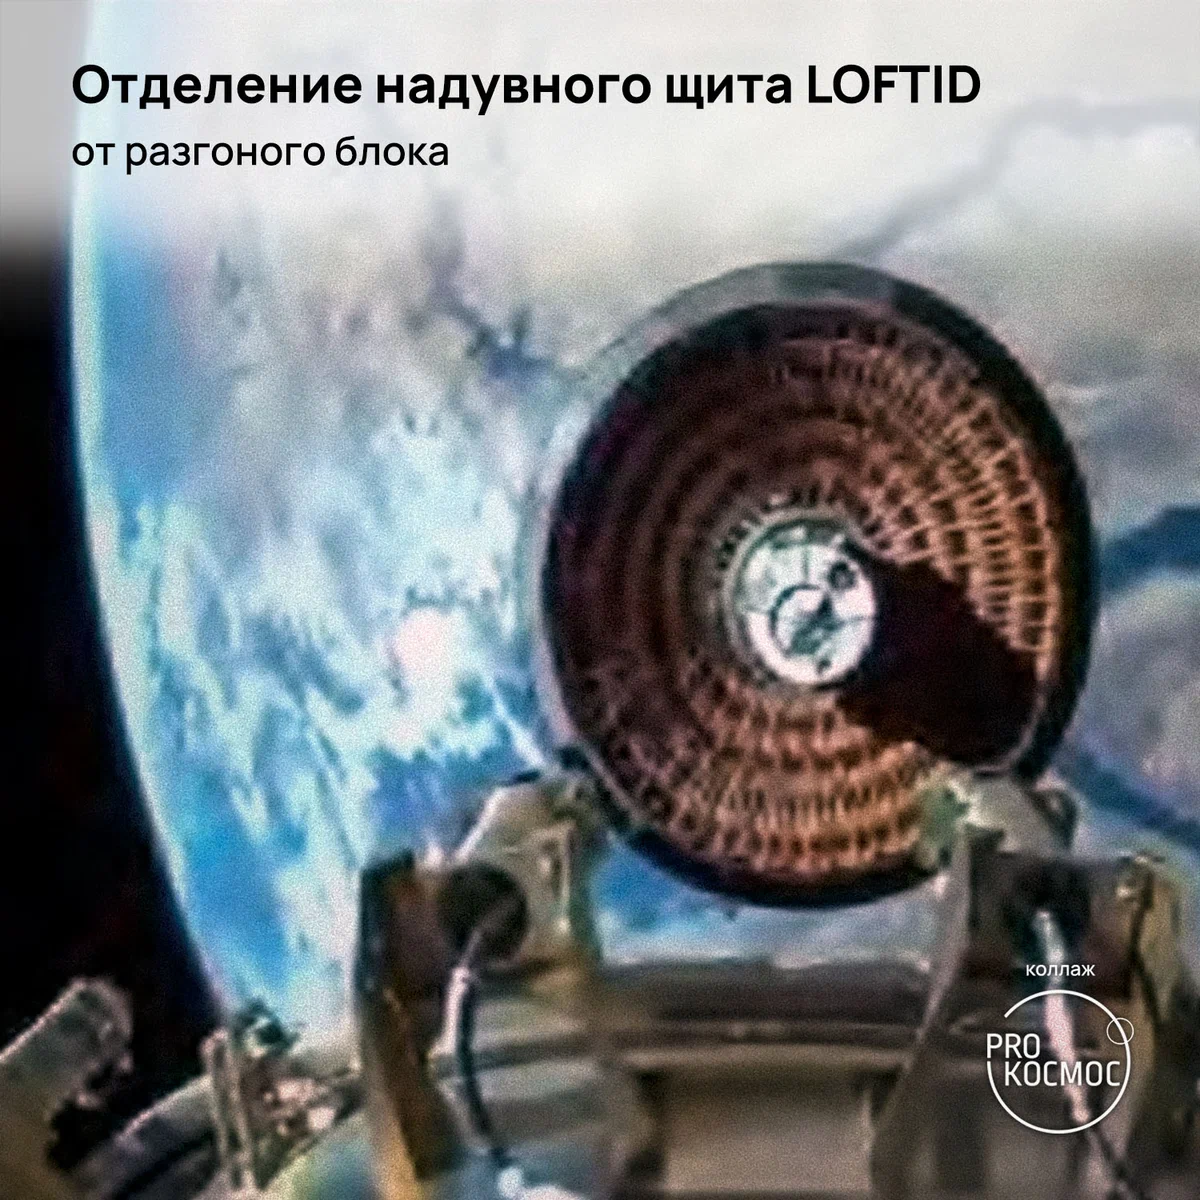 Надувной теплозащитный экран: NASA успешно завершило космическую миссию LOFTID⁠⁠ height=1200px width=1200px